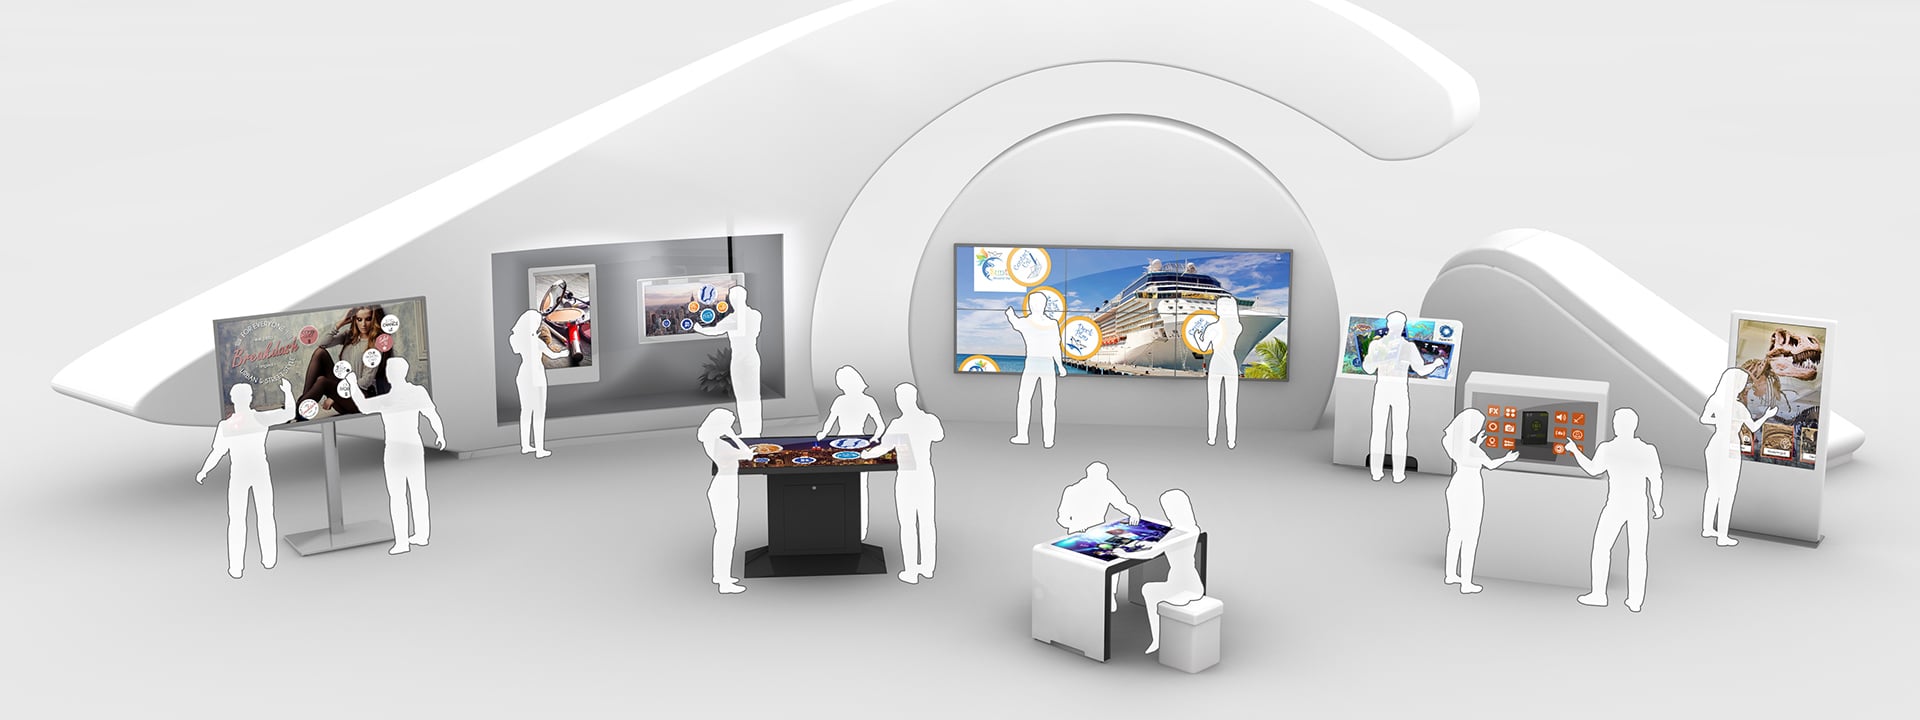 Multi Touch Screen Software für Reise, Tourismus, Infocenter